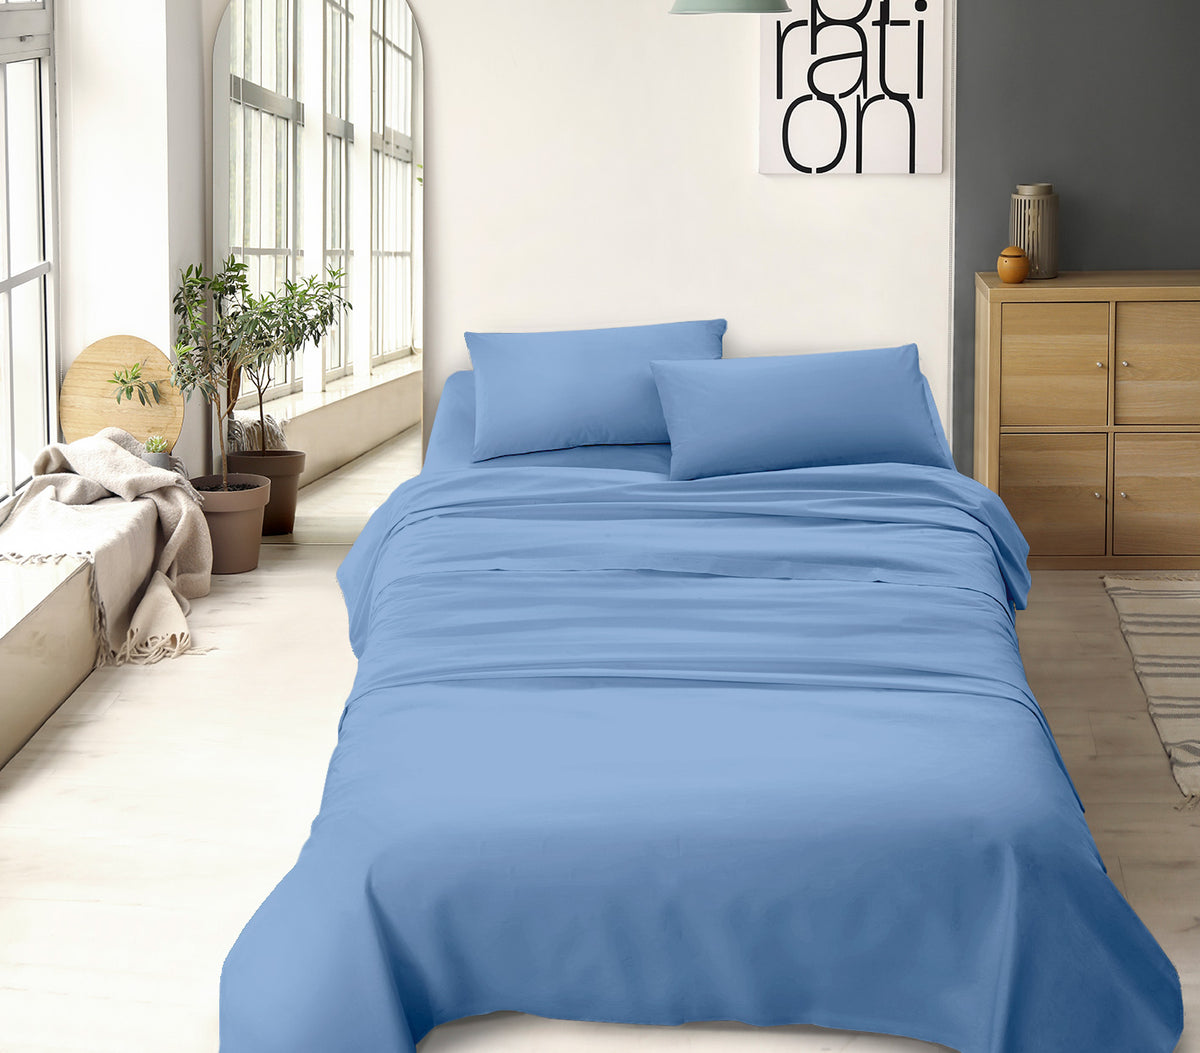 Completo letto tinta unita prodotto italiano set lenzuola 100% cotone misura alla francese